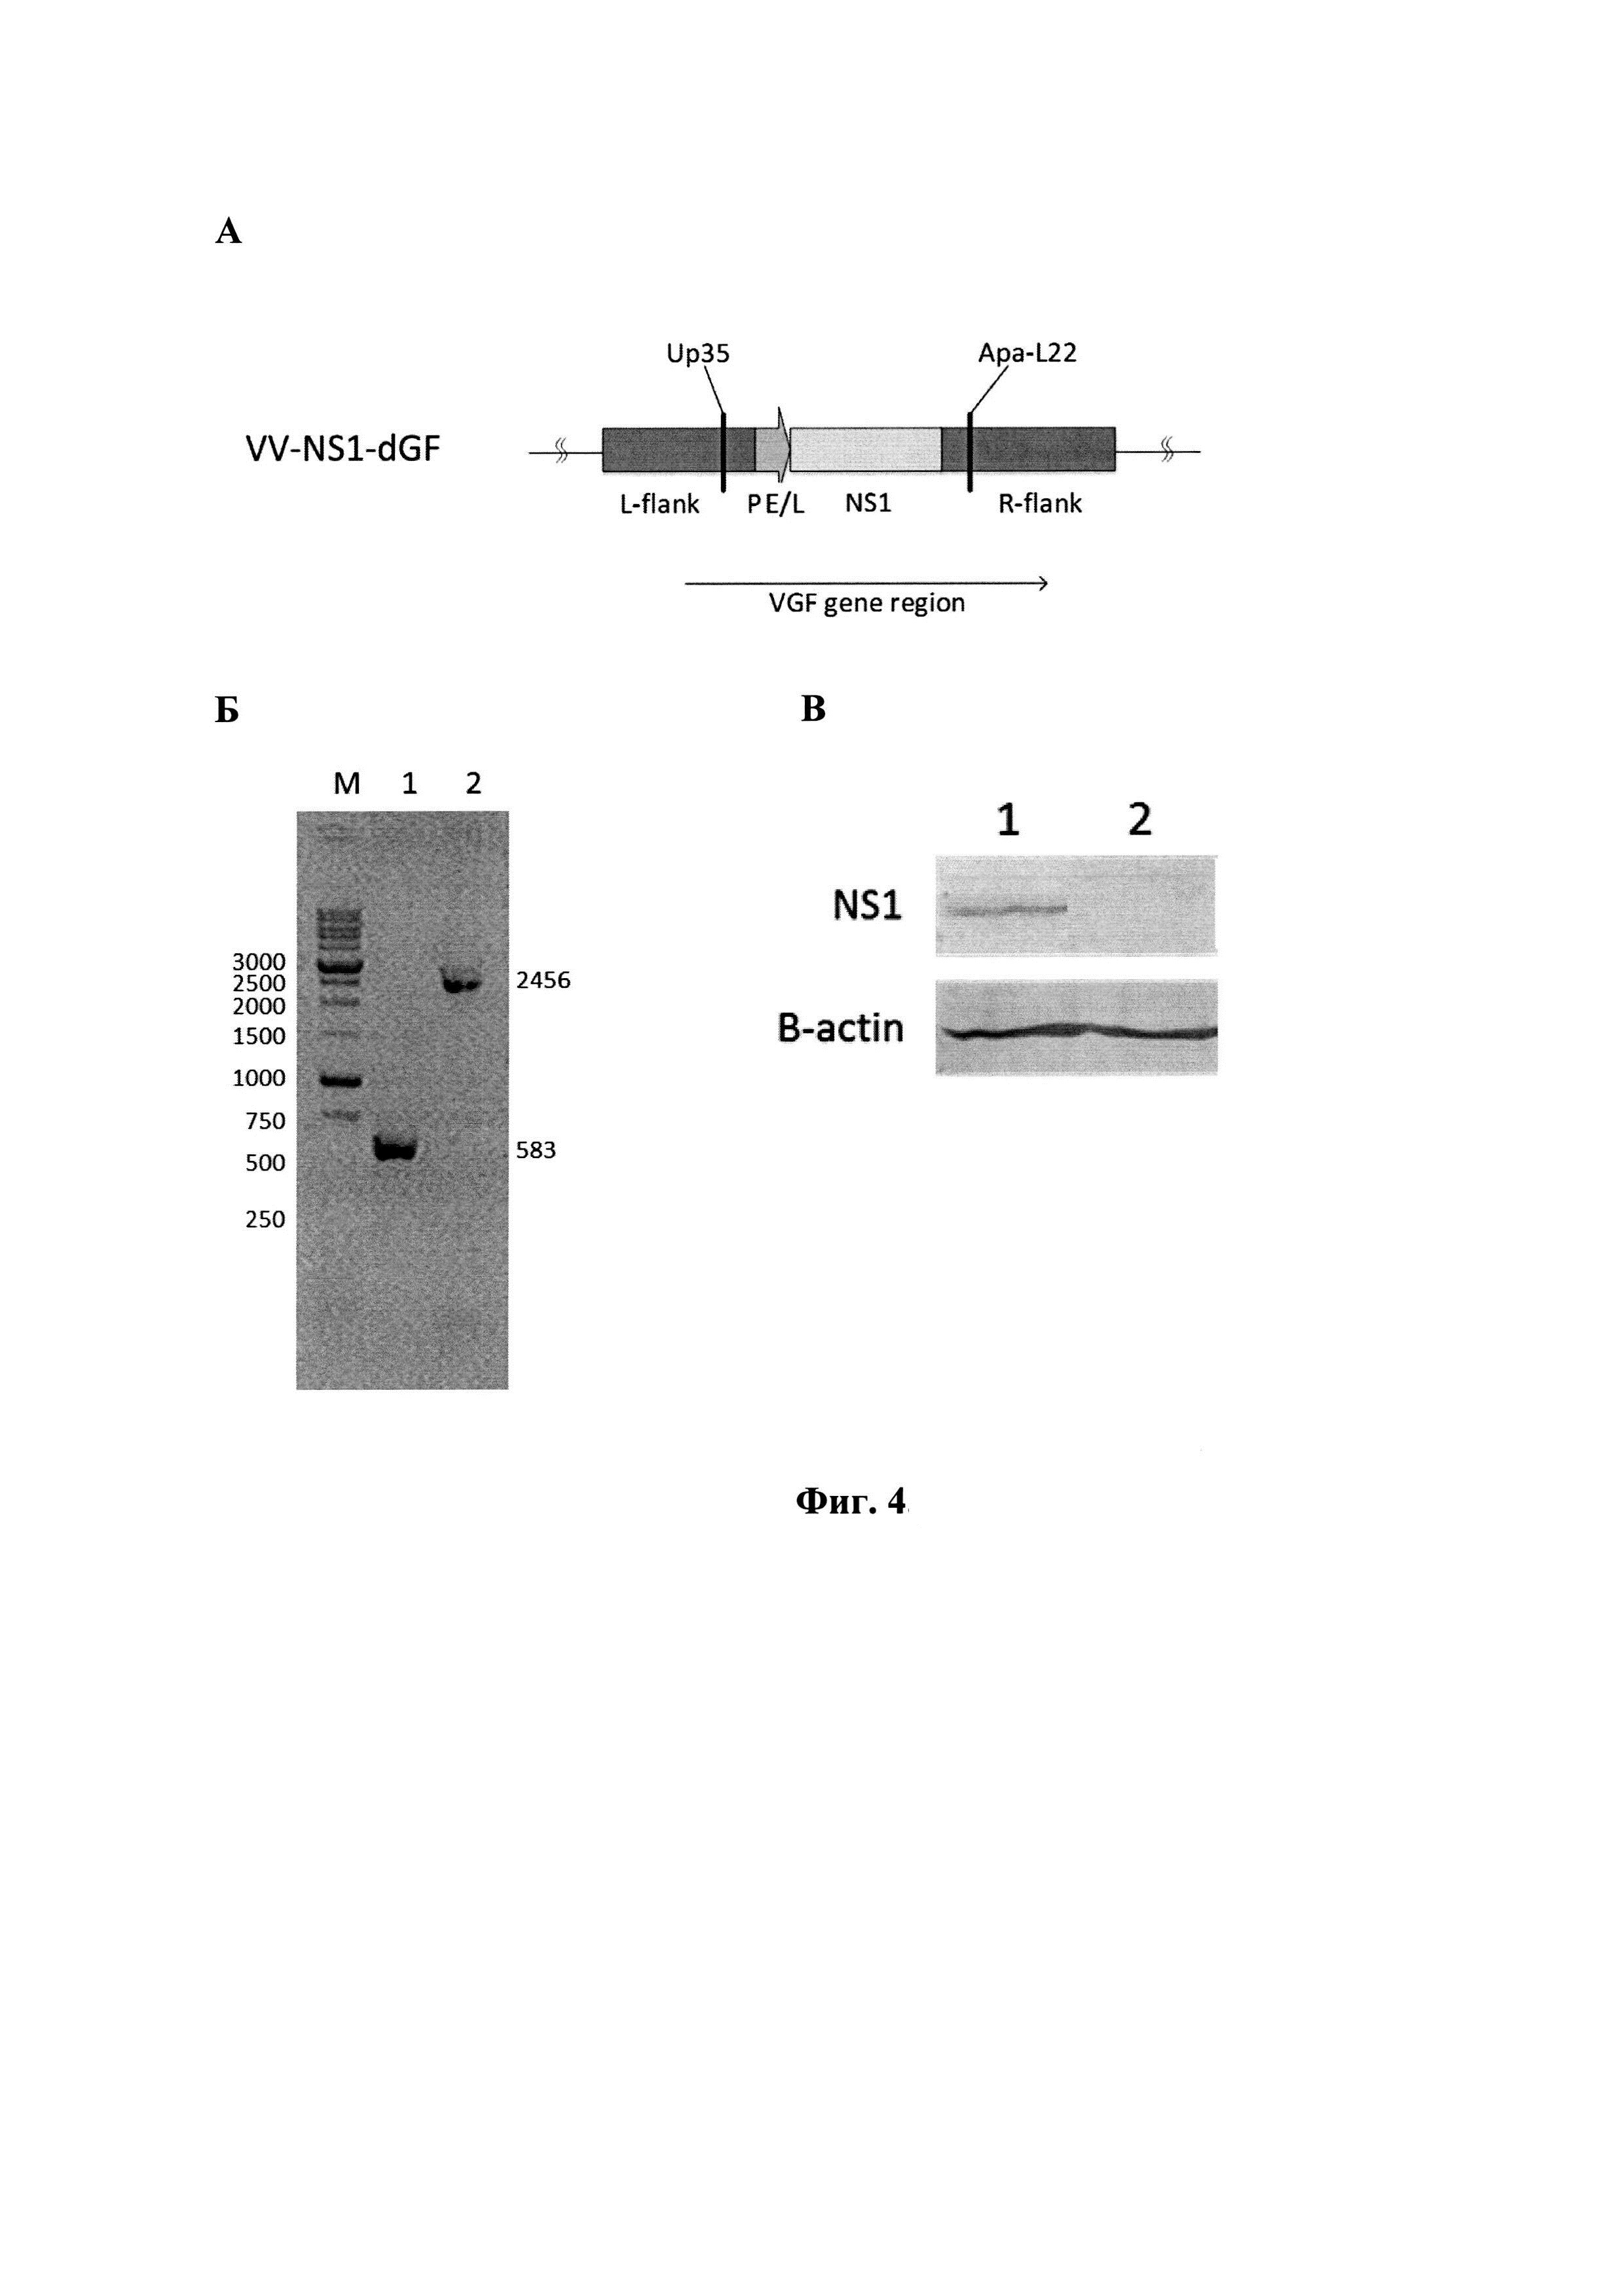 Рекомбинантный штамм VV-NS1-dGF вируса осповакцины, продуцирующий белок NS1 парвовируса H-1 и обладающий онколитической активностью в отношении глиобластомы человека